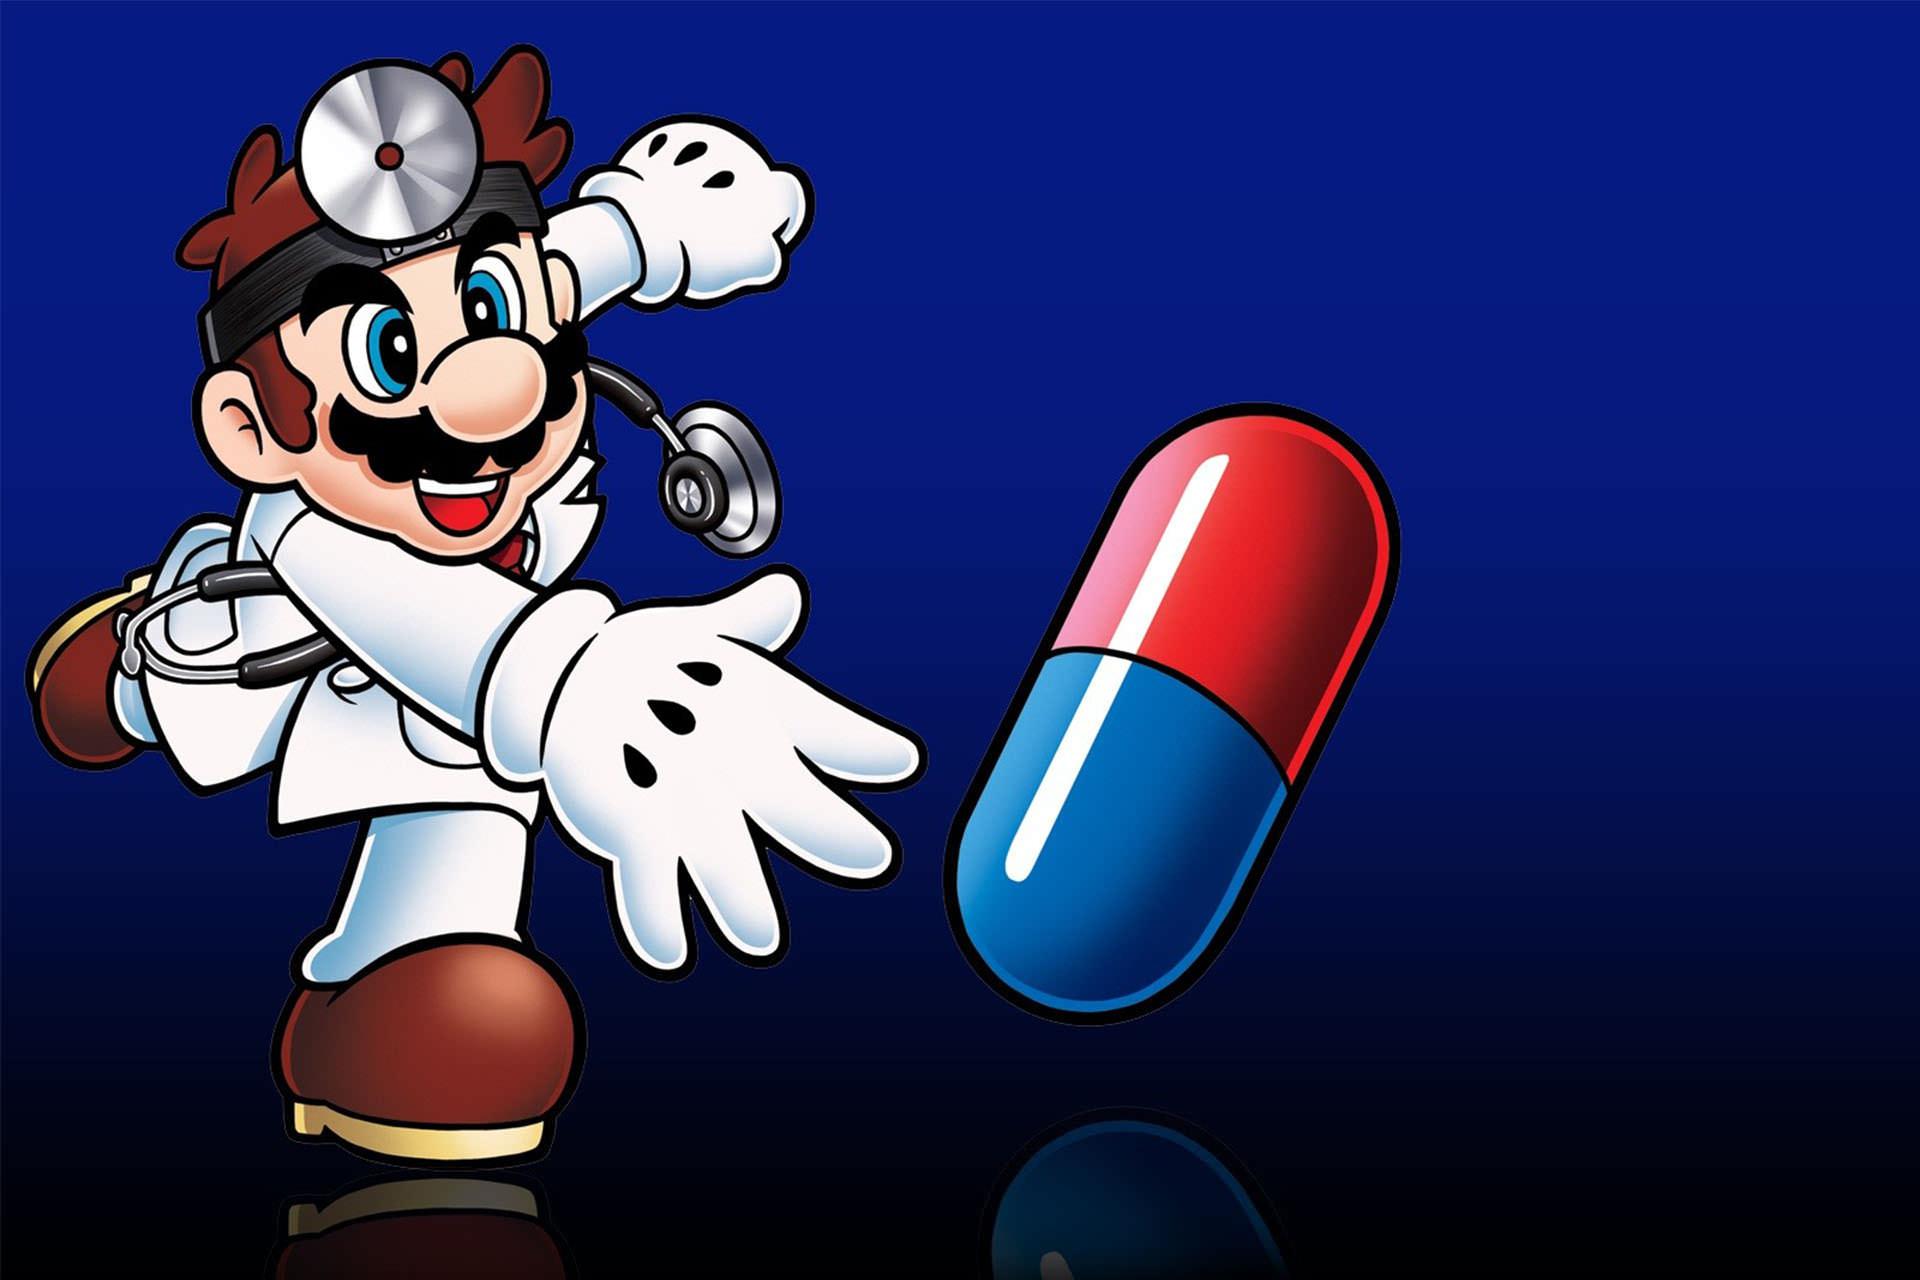 بررسی بازی موبایل Dr. Mario World